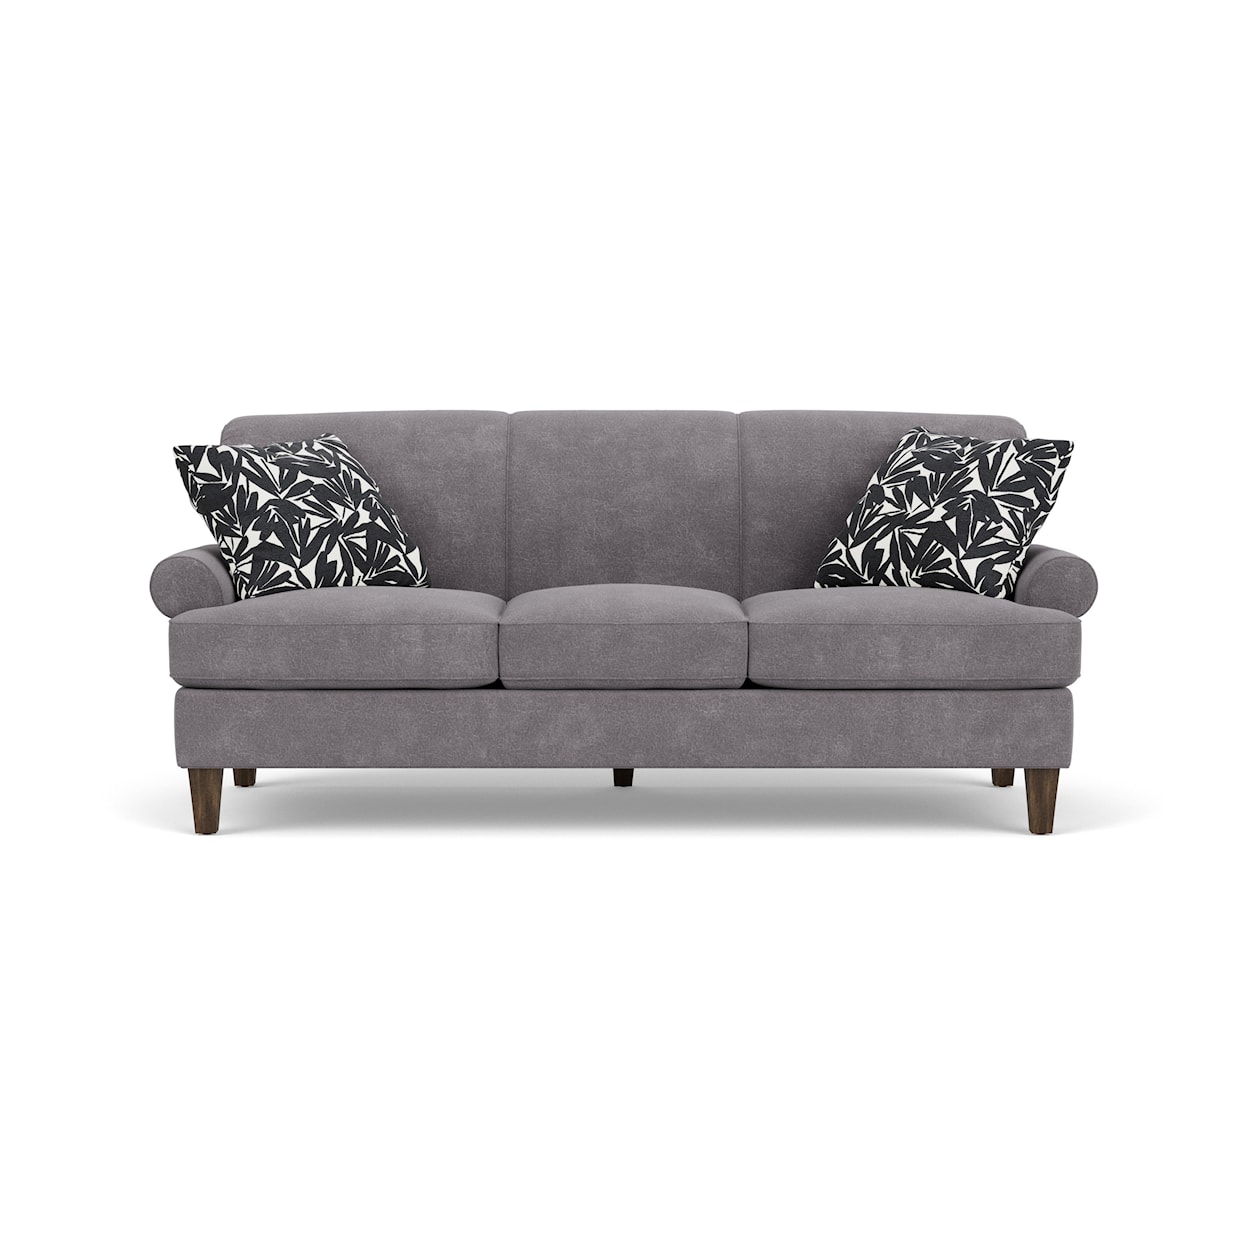 Flexsteel Venture Sofa